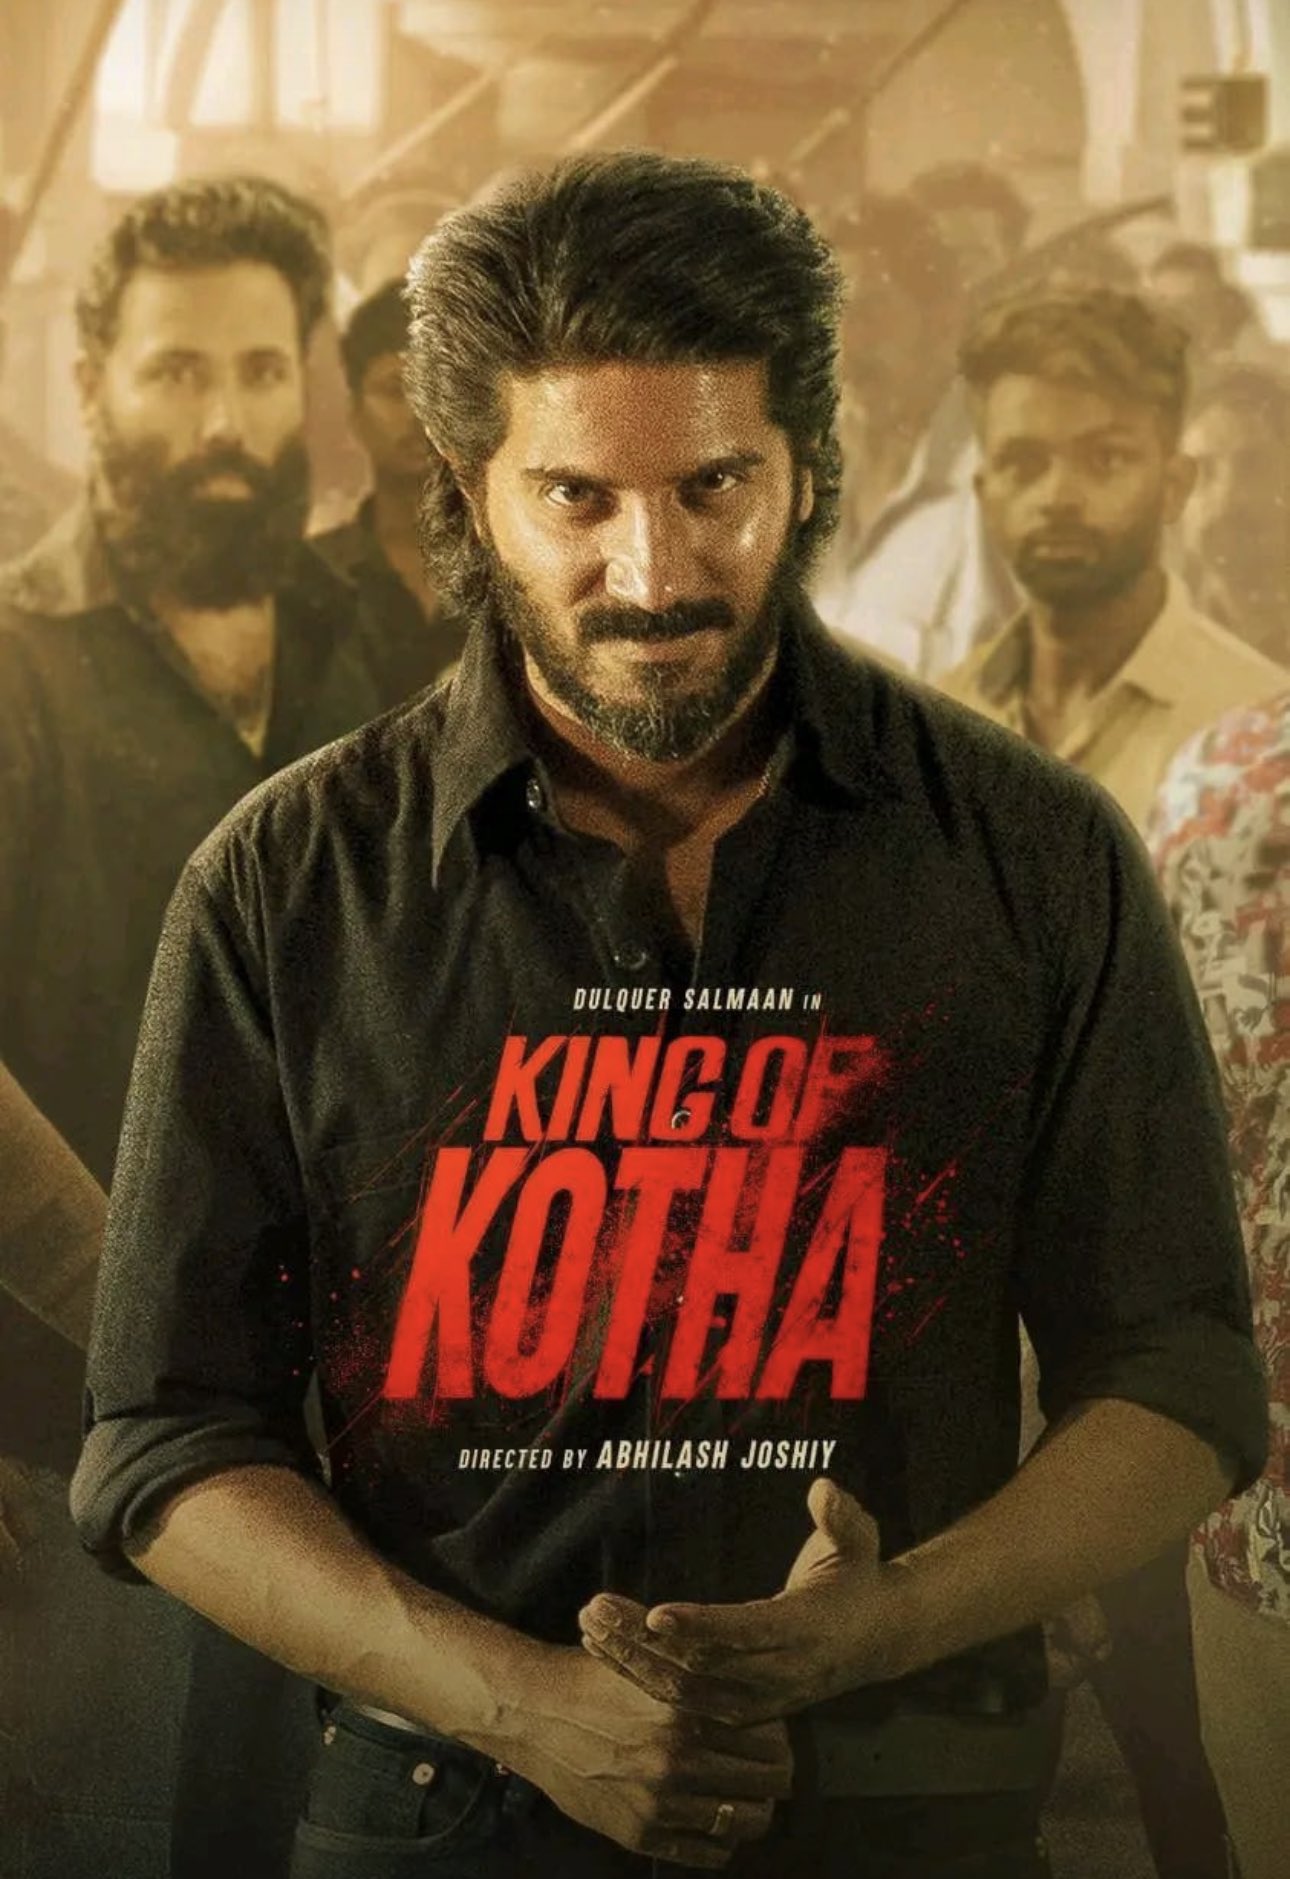 King of Kotha